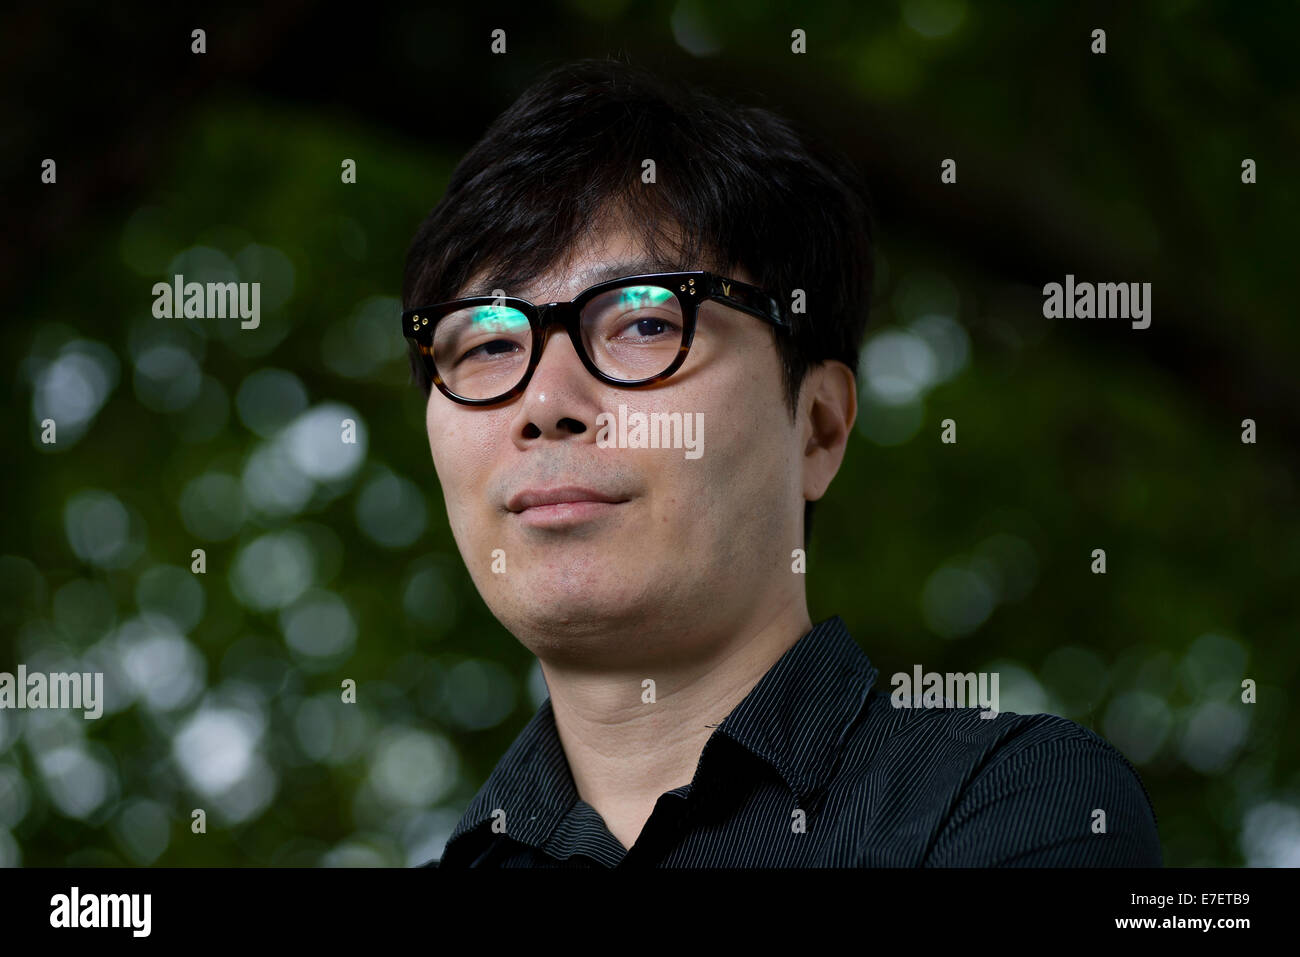 Moderno escritor de Corea del Sur, Kim Young-ha aparece en el Edinburgh International Book Festival. Foto de stock